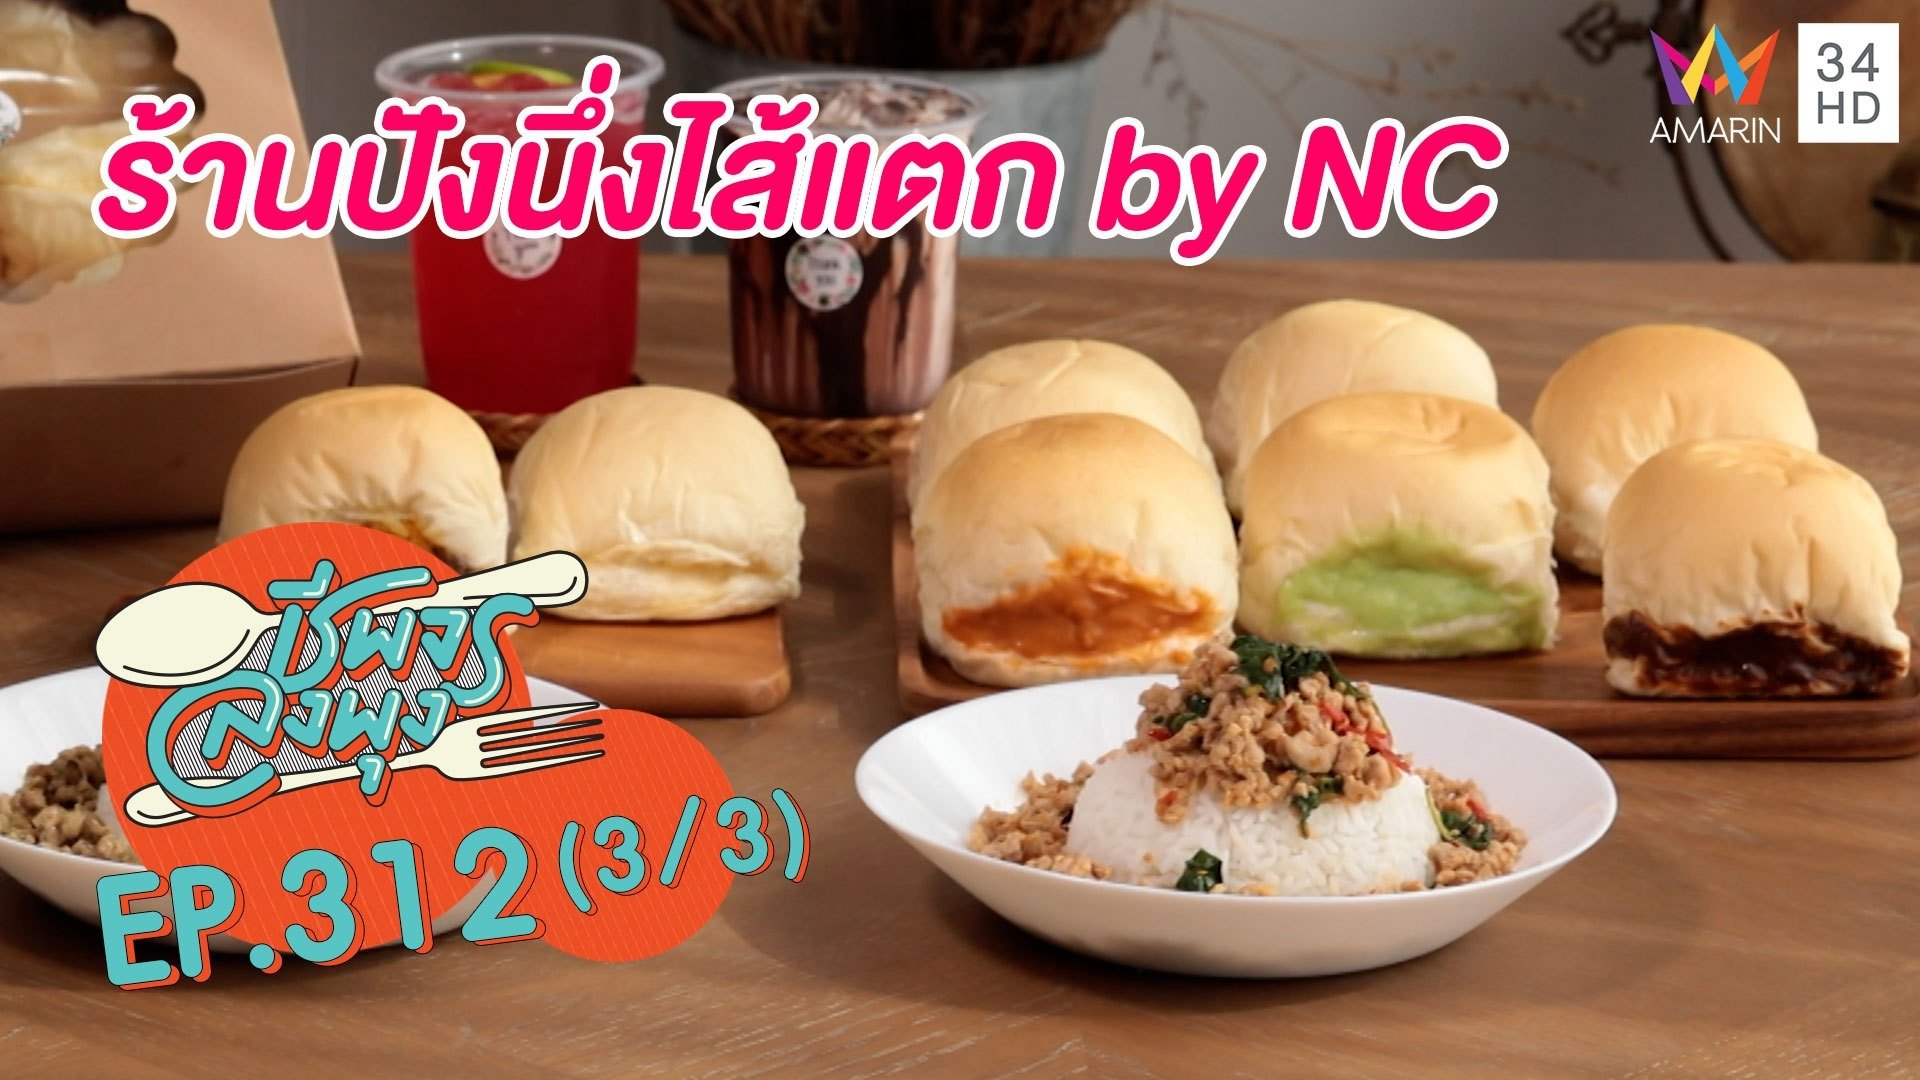 ขนมปังเนื้อนุ่มทะลักทุกไส้ @ร้านปังนึ่งไส้แตก by NC | ชีพจรลงพุง | 17 ก.ค. 64 (3/3) | AMARIN TVHD34